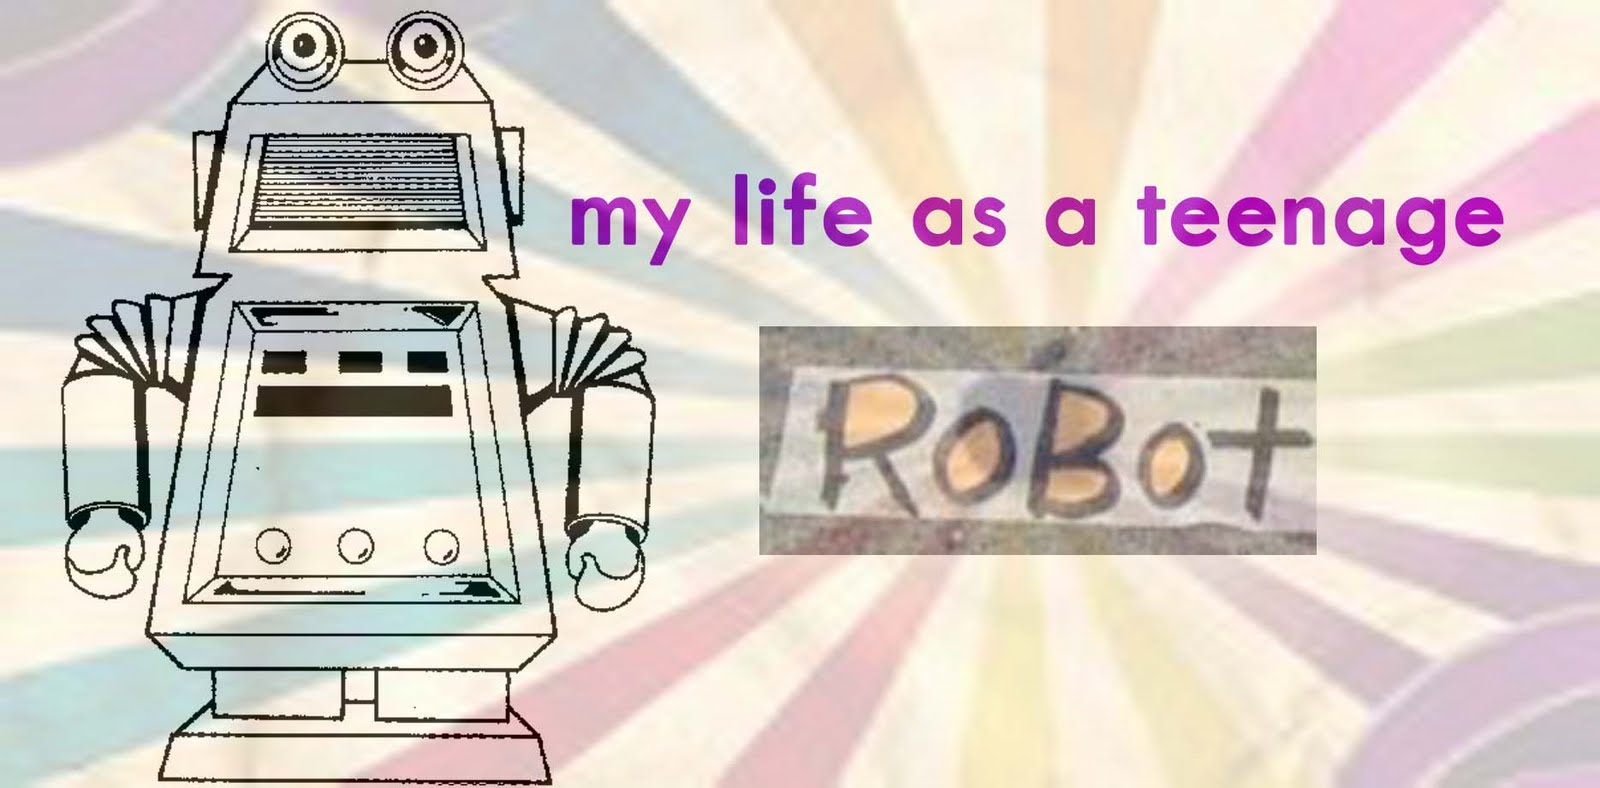 little teenage robot life